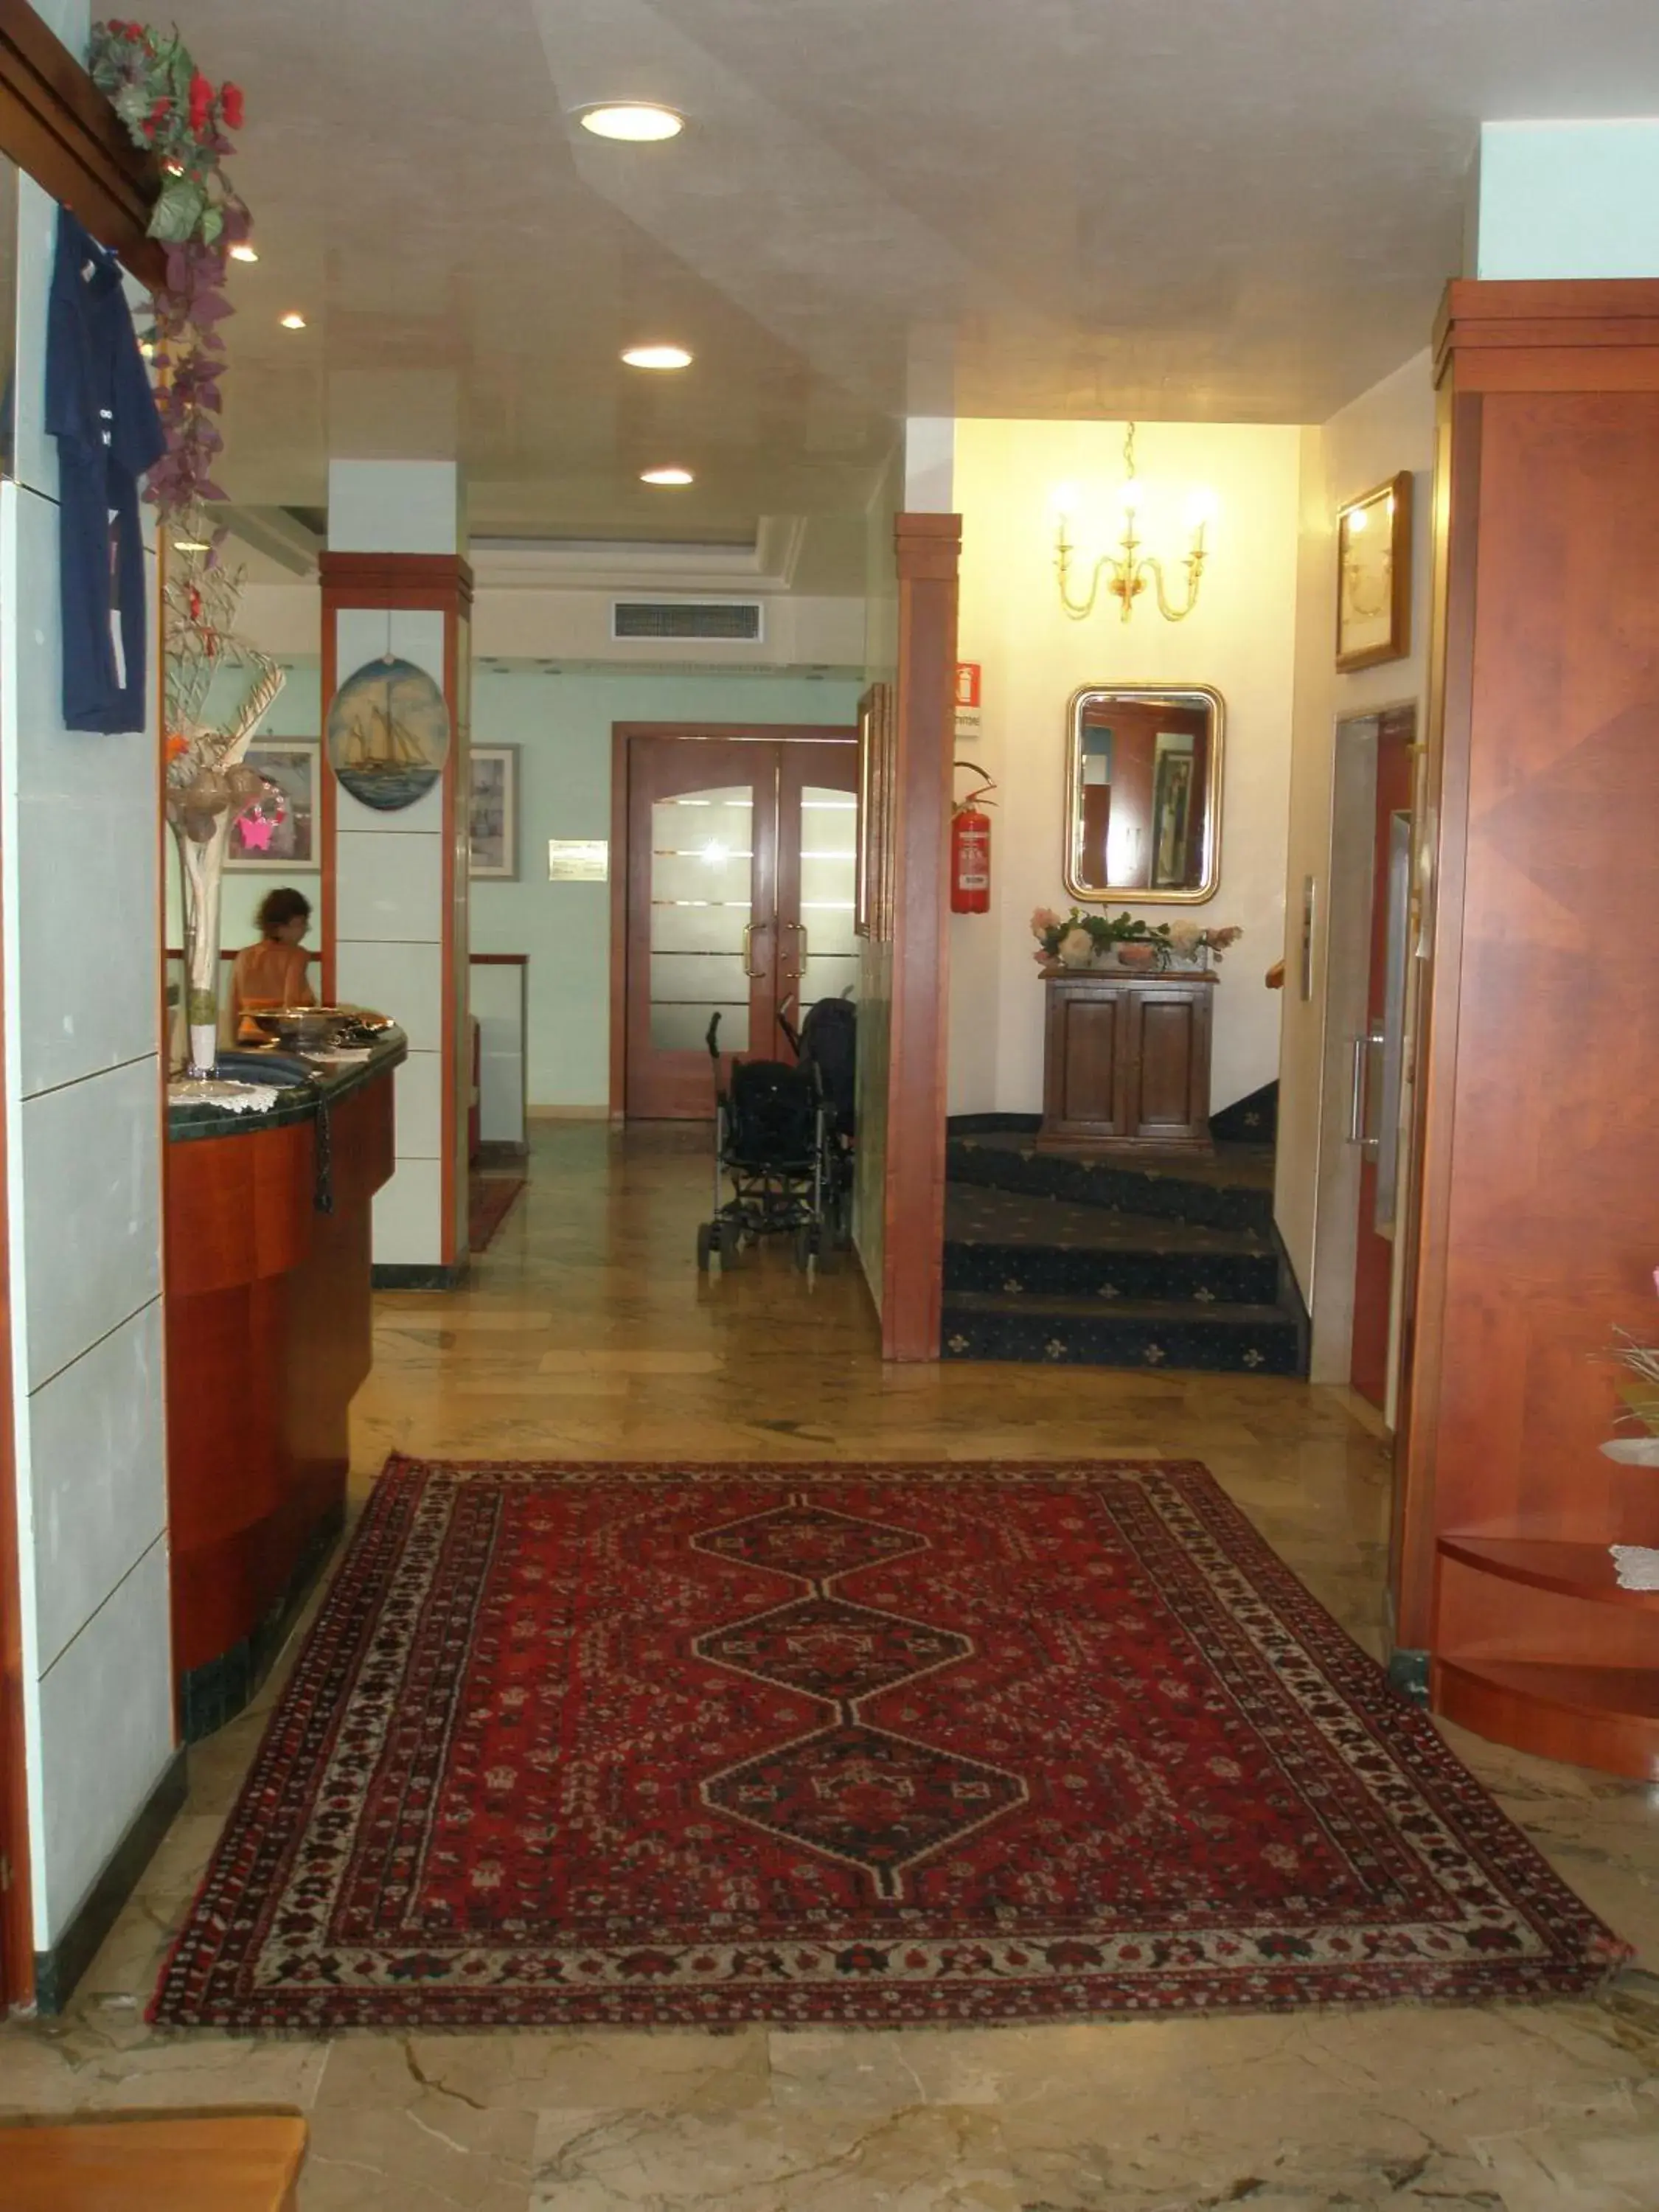 Lobby or reception, Lobby/Reception in Hotel American